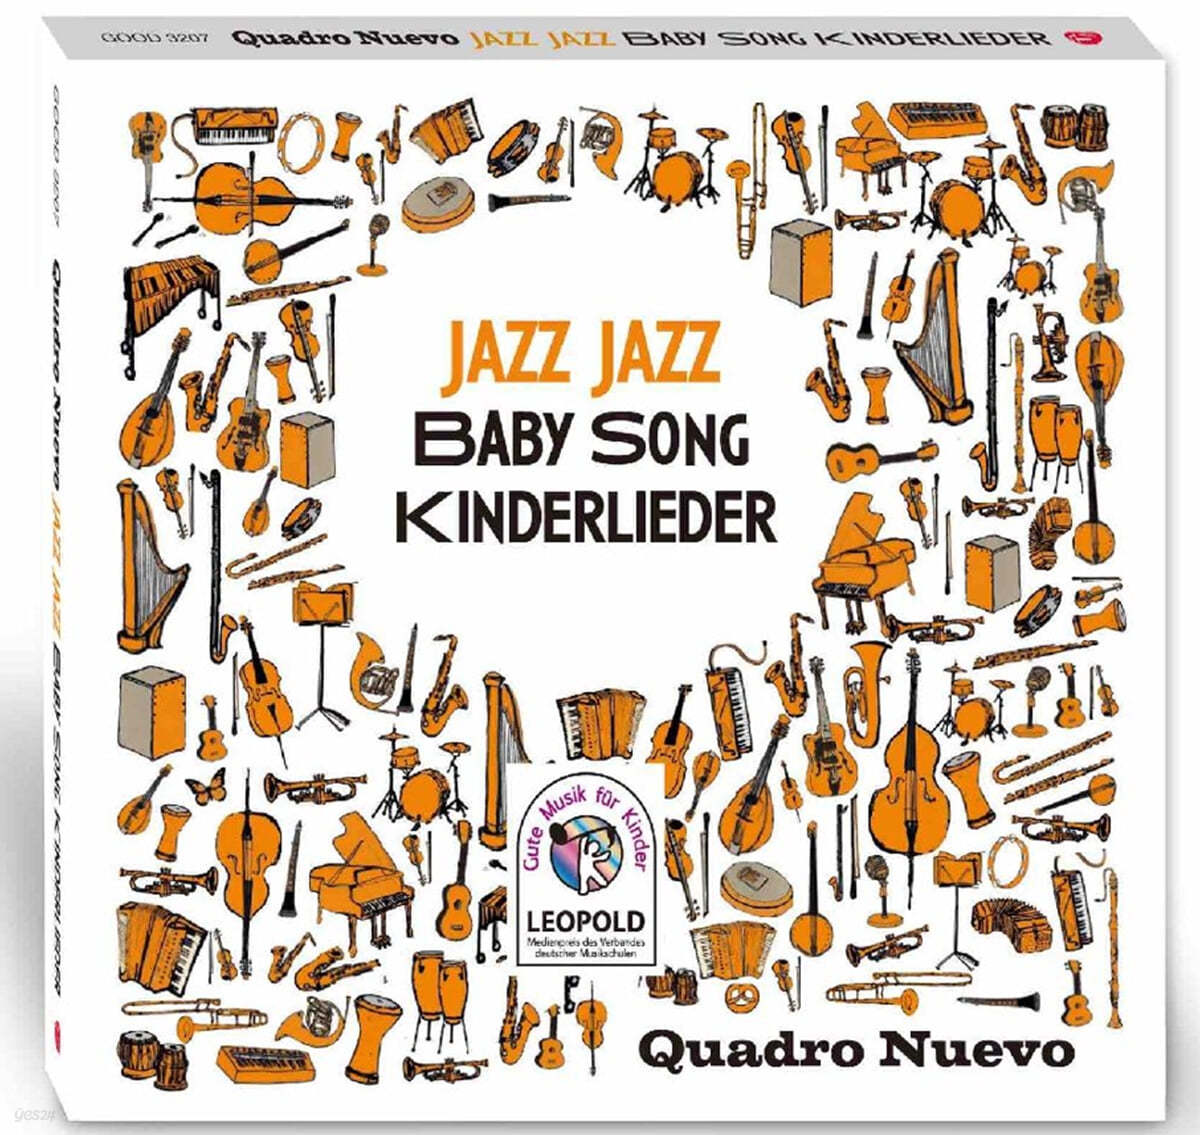 Quadro Nuevo (콰드로 누에보) - JAZZ JAZZ BABY SONG (재즈 재즈 베이비 송)